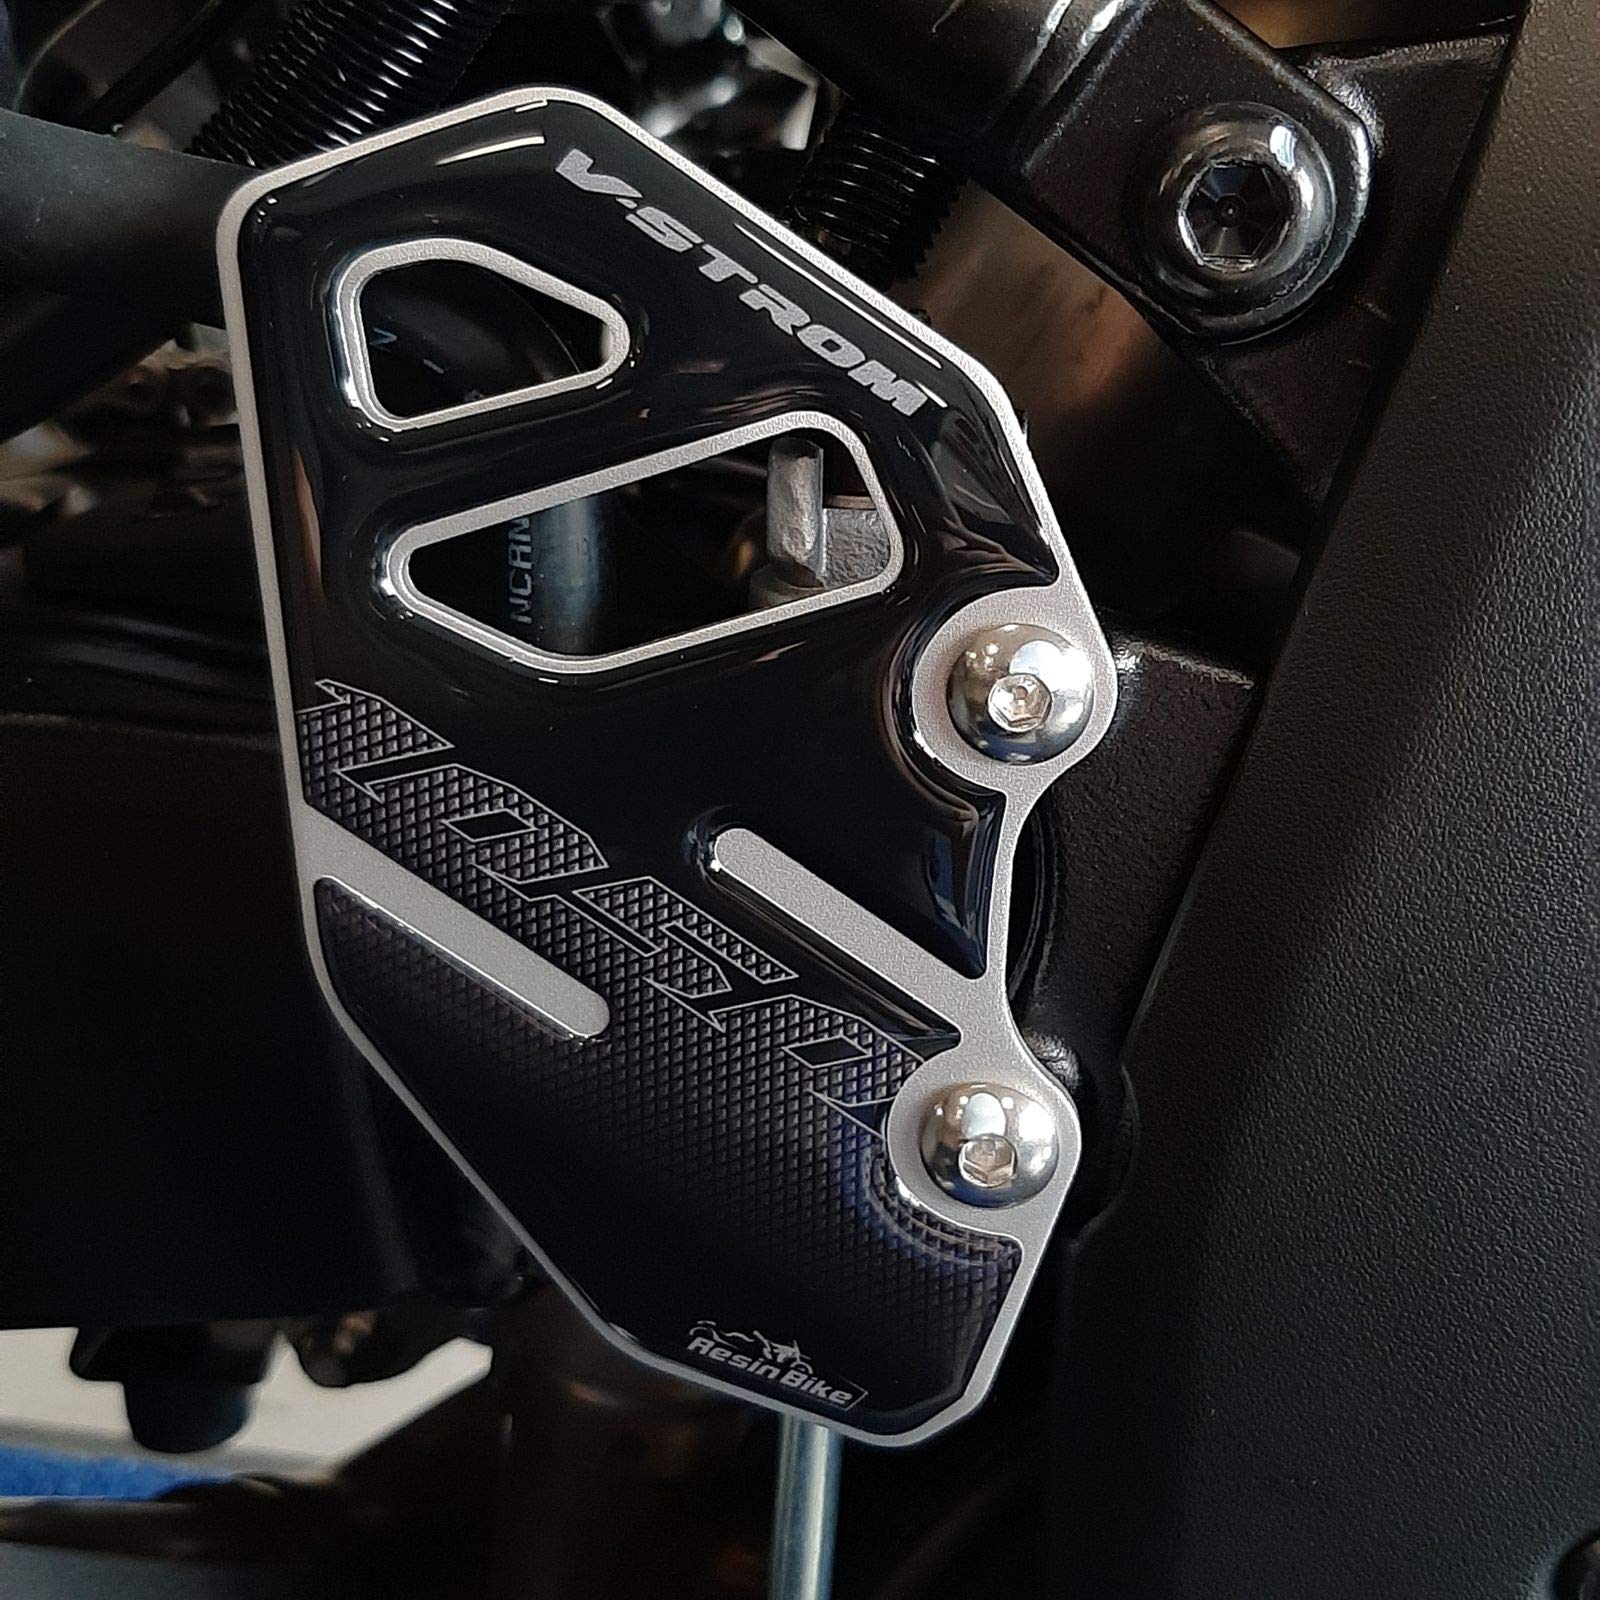 Resin Bike Aufkleber für Motorrad Kompatibel mit Suzuki V-Strom 1050 und 1050 XT ABS 2020. Einstiegsleistenschutz vor Stößen und Kratzern. 3D-Harzklebstoff - Stickers - Made in Italy von Resin Bike